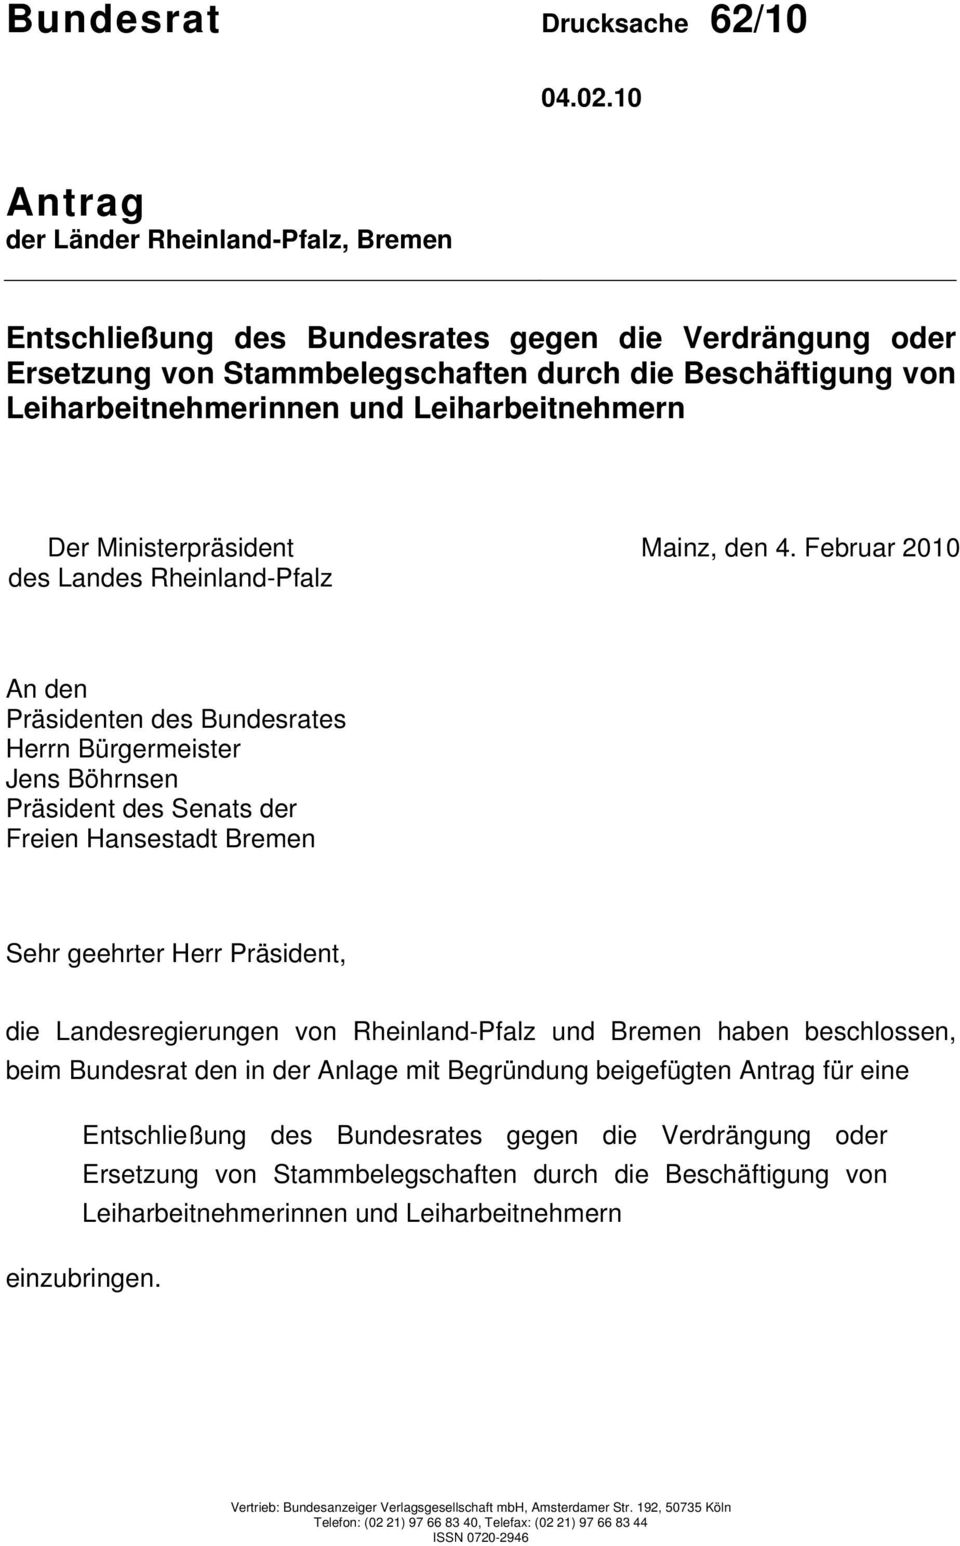 Präsident, die Landesregierungen von Rheinland-Pfalz und Bremen haben beschlossen, beim Bundesrat den in der Anlage mit Begründung beigefügten Antrag für